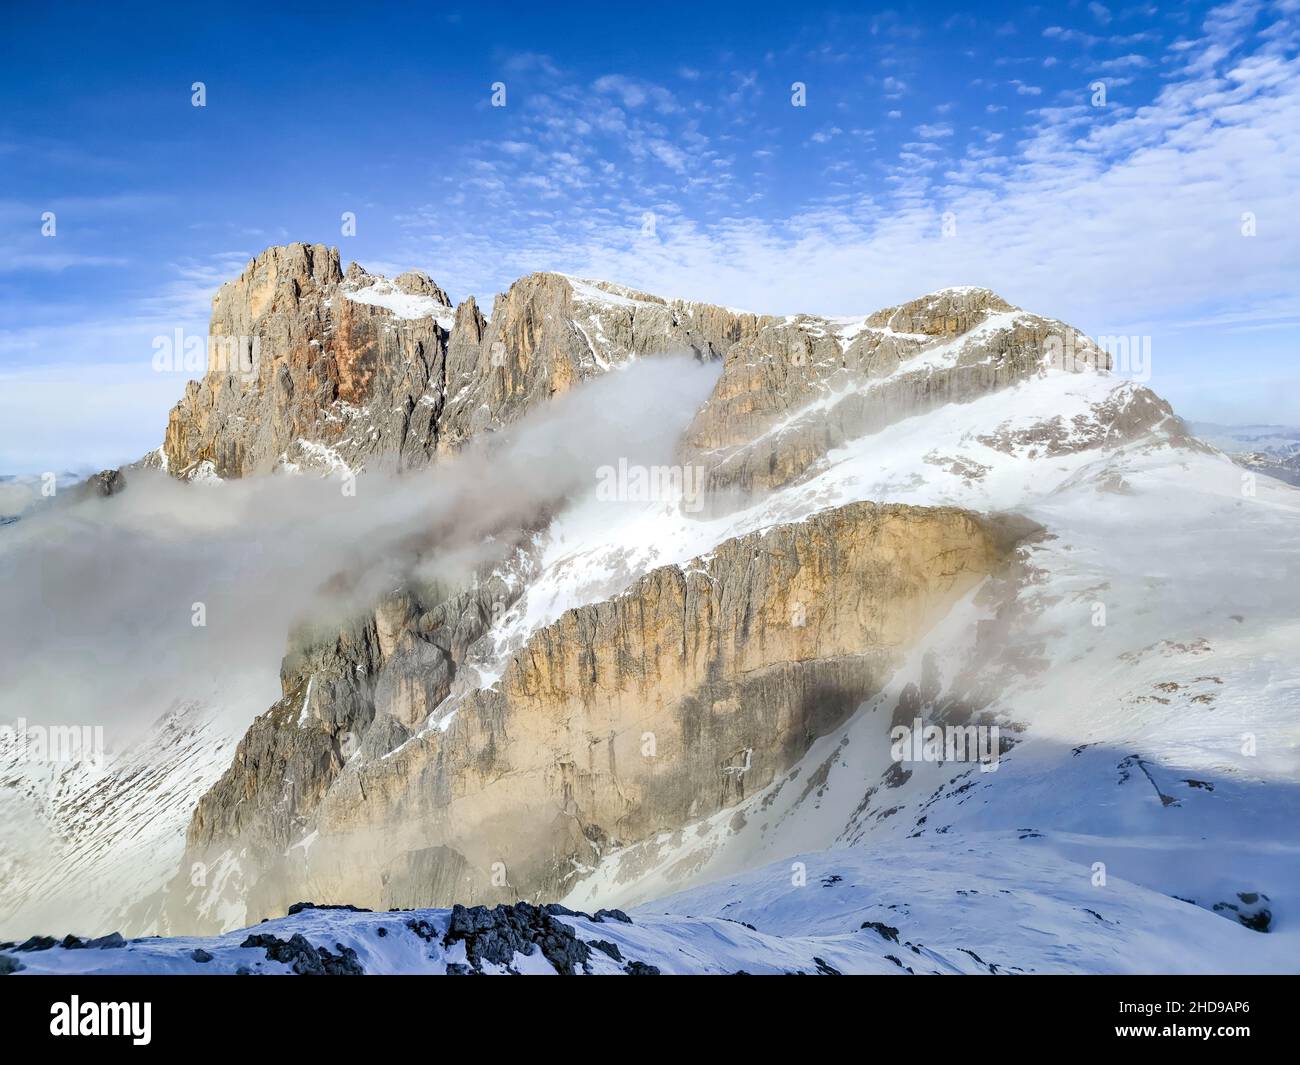 Cimon della Pala sur les Dolomites dans le Trentin-Haut-Adige avec fond bleu ciel et faible brouillard. Banque D'Images